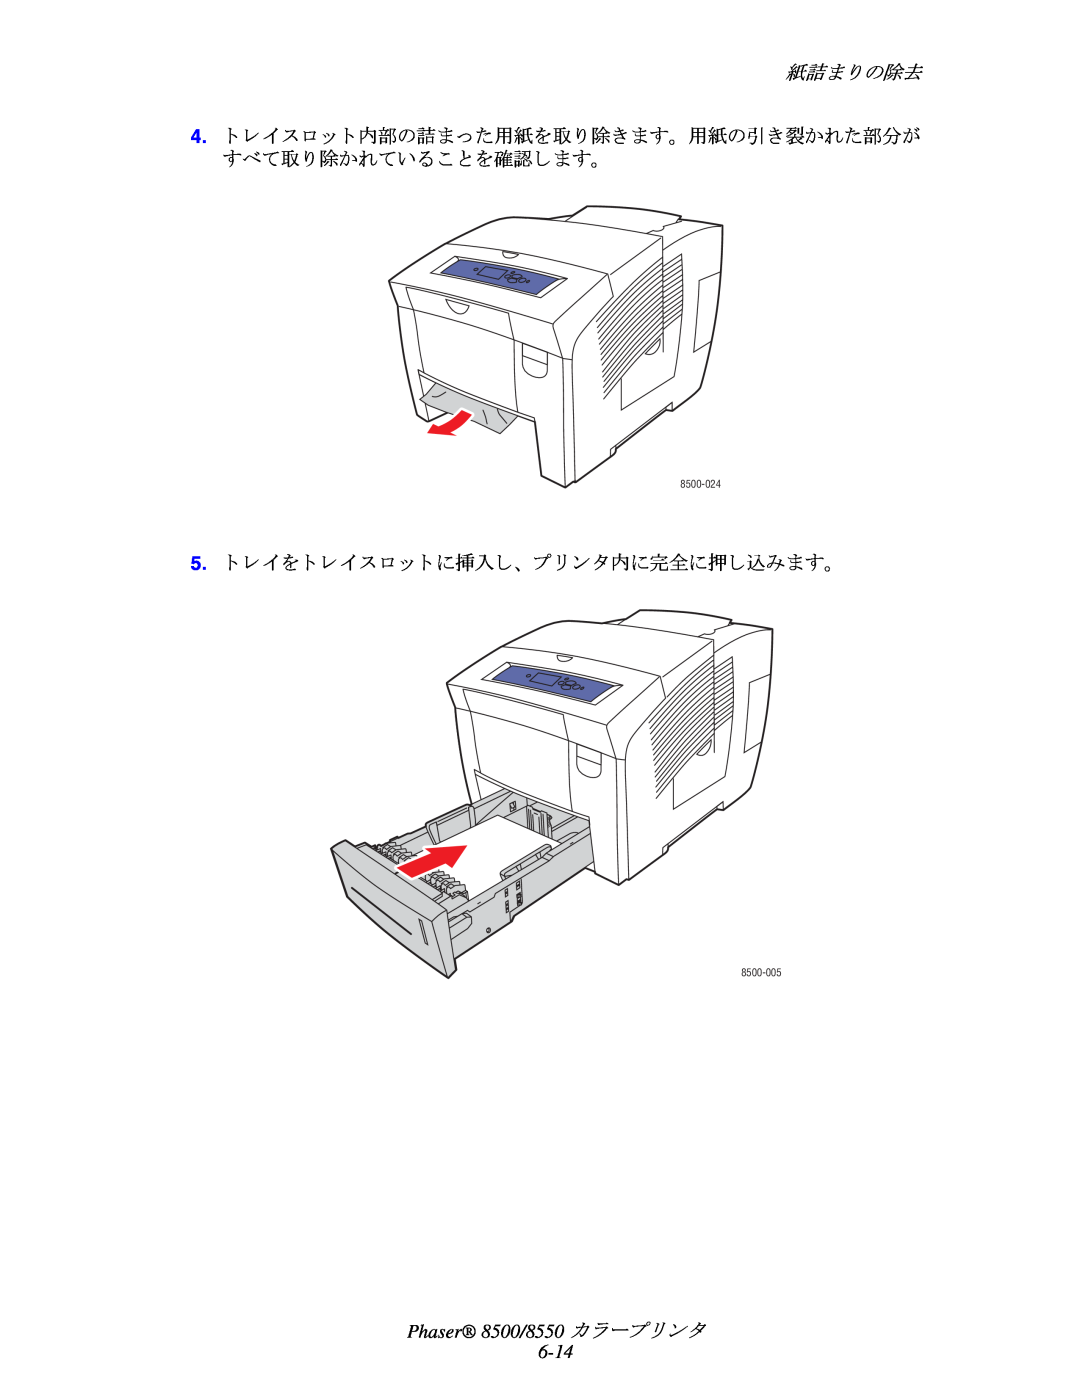 Xerox manual 紙詰ま り の除去, Phaser 8500/8550 カ ラープ リ ン タ 6-14, 8500-024, 8500-005 